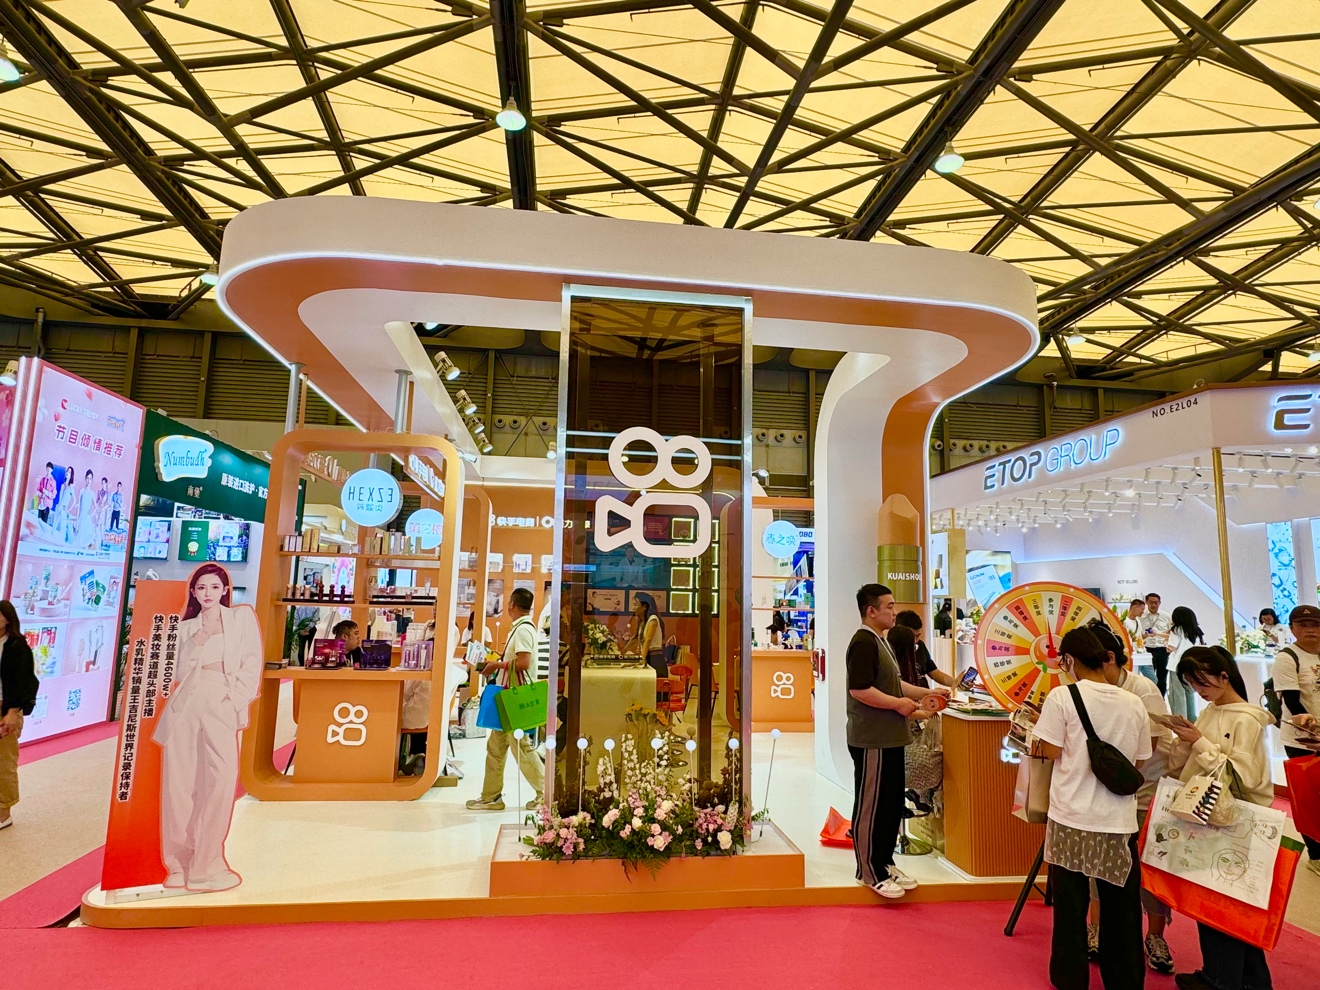 快手美妆亮相第28届CBE中国美容博览会，携手达人助力美妆品牌打开生意新局面